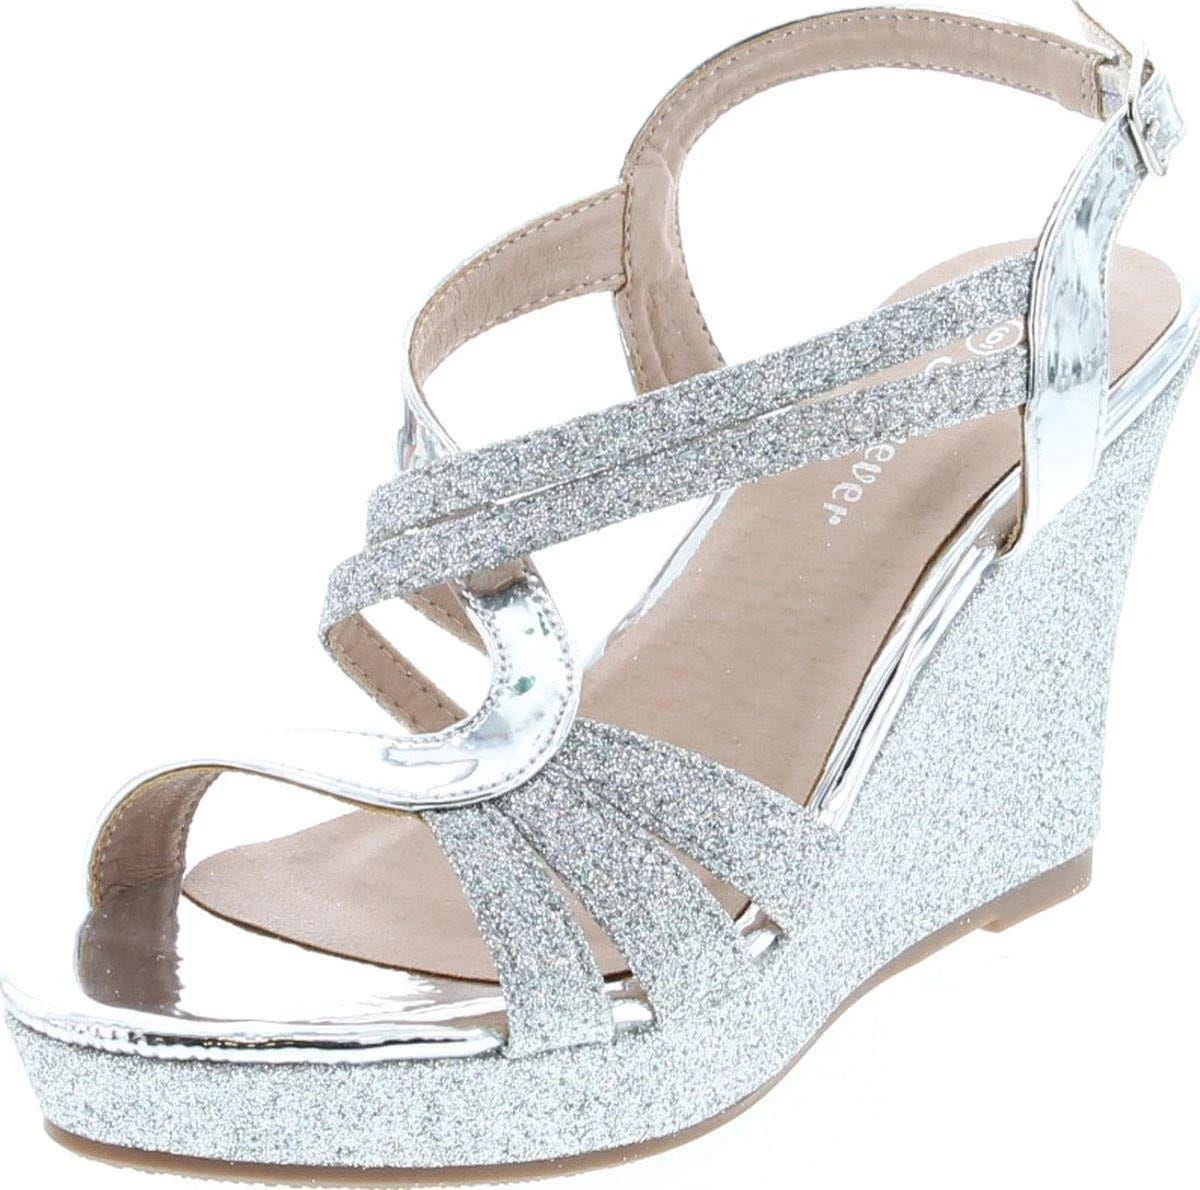 Elegant Silver Platform Sandals with Strappy Design | Image